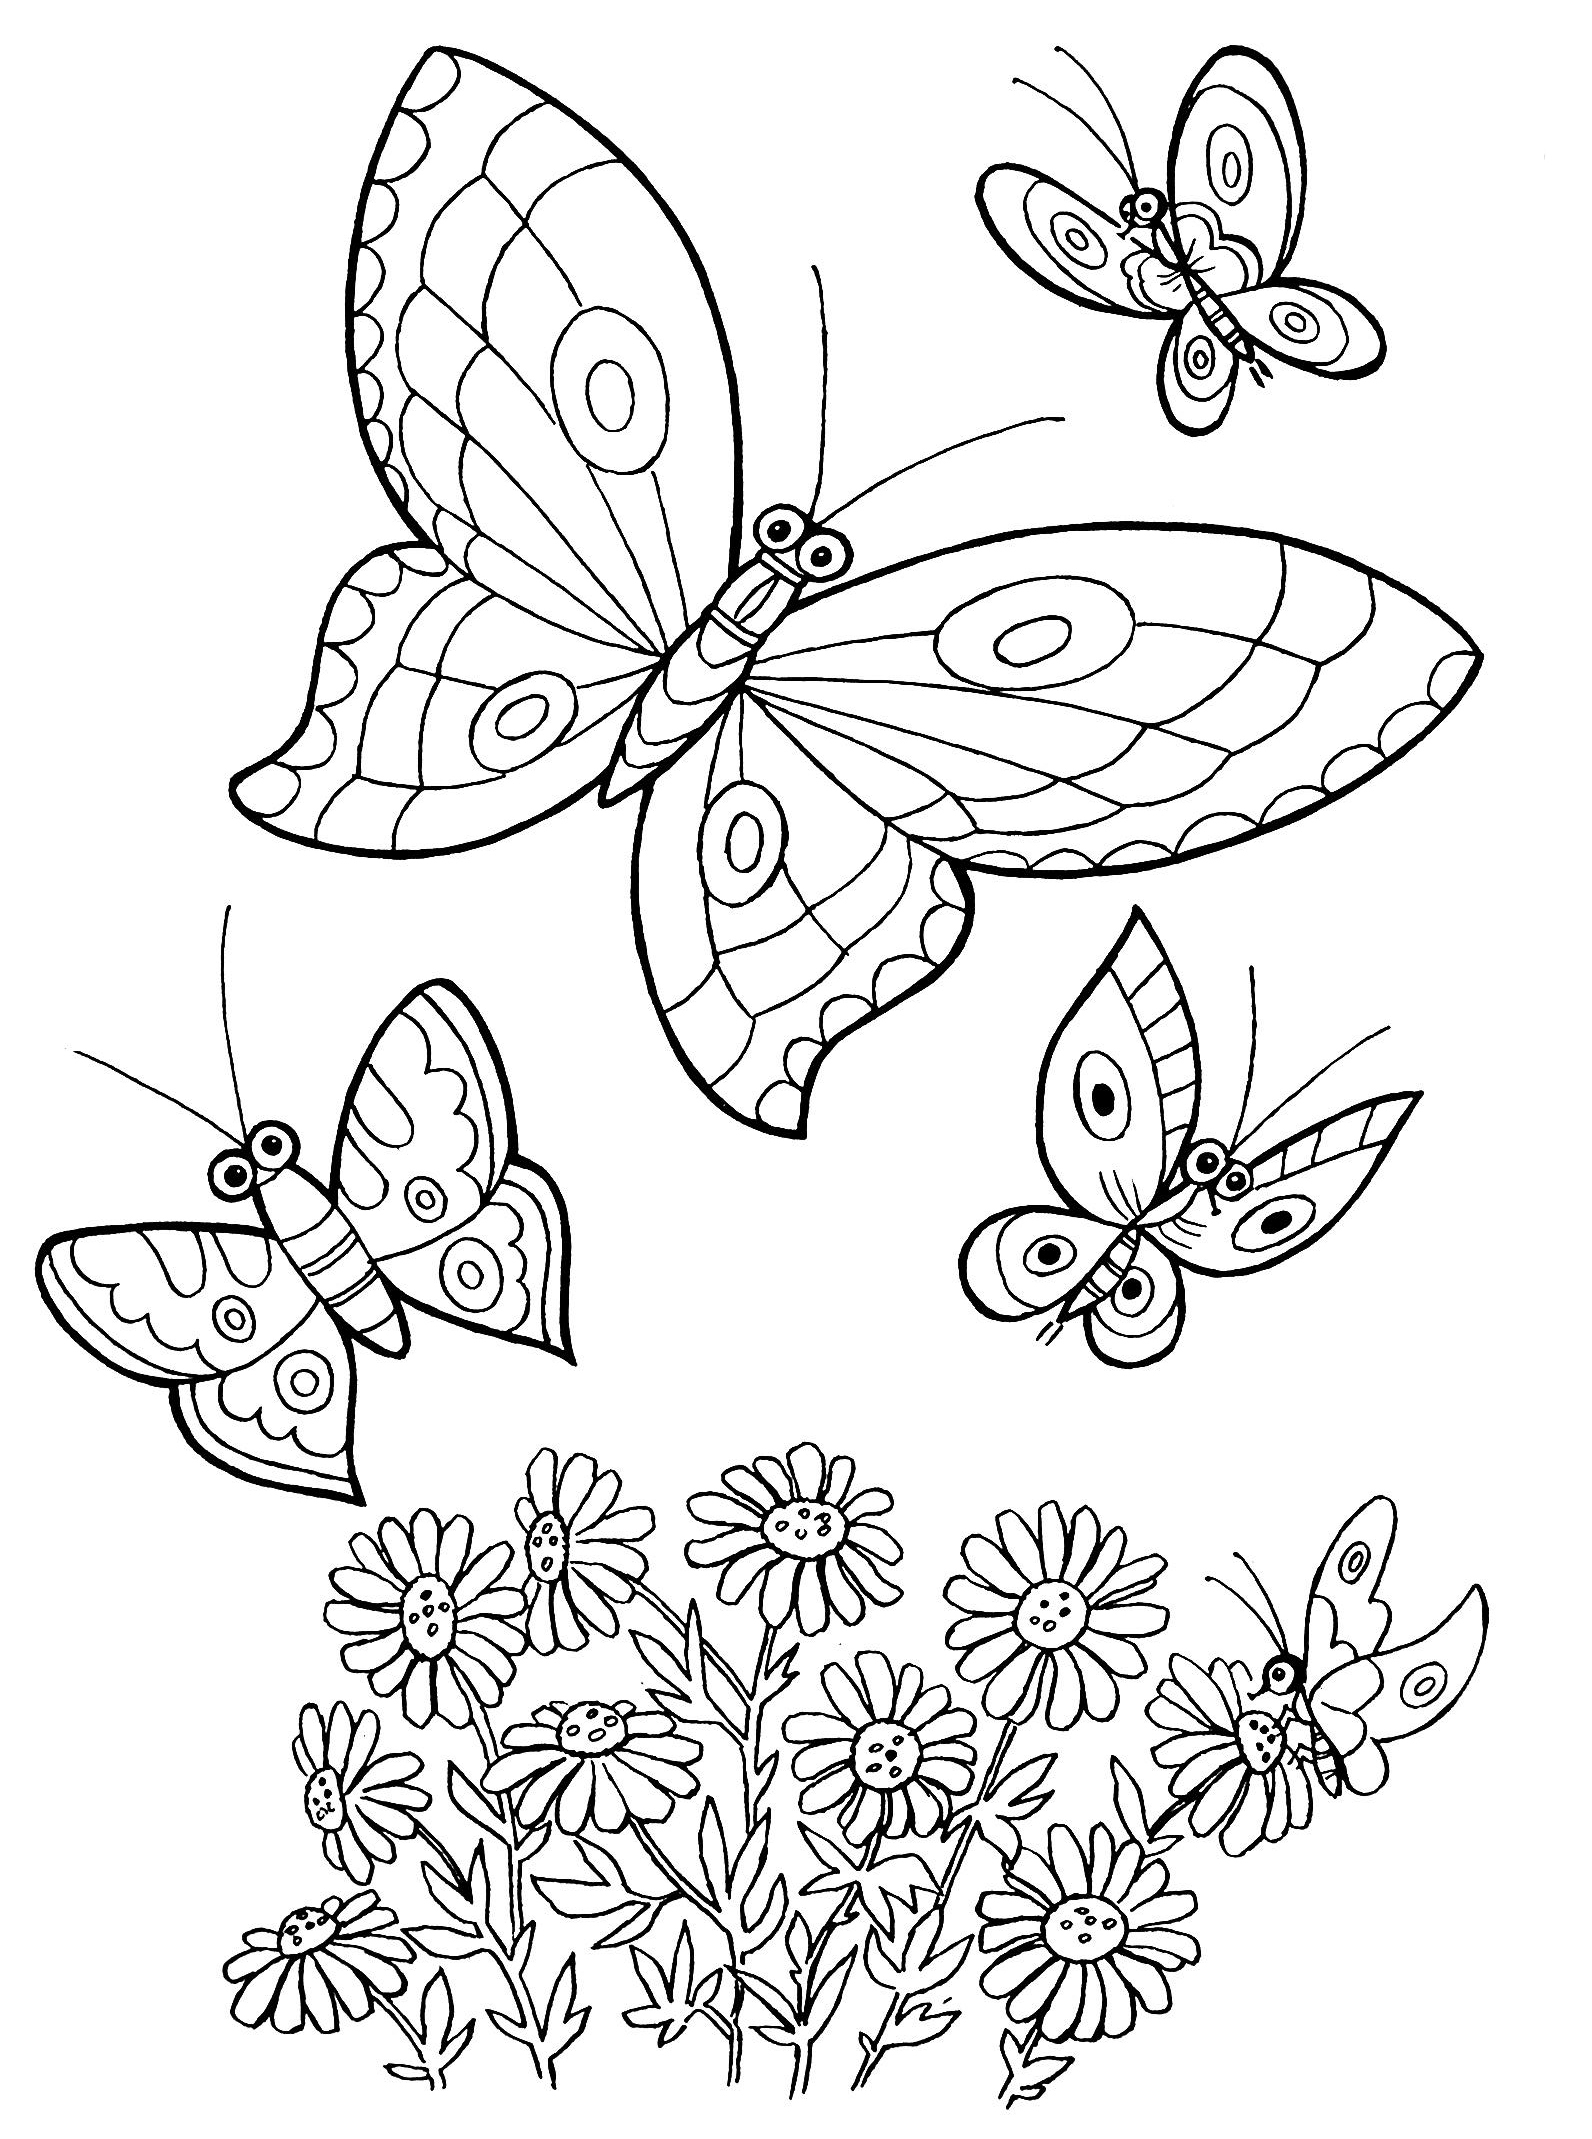 Цветы и бабочки. Раскраска